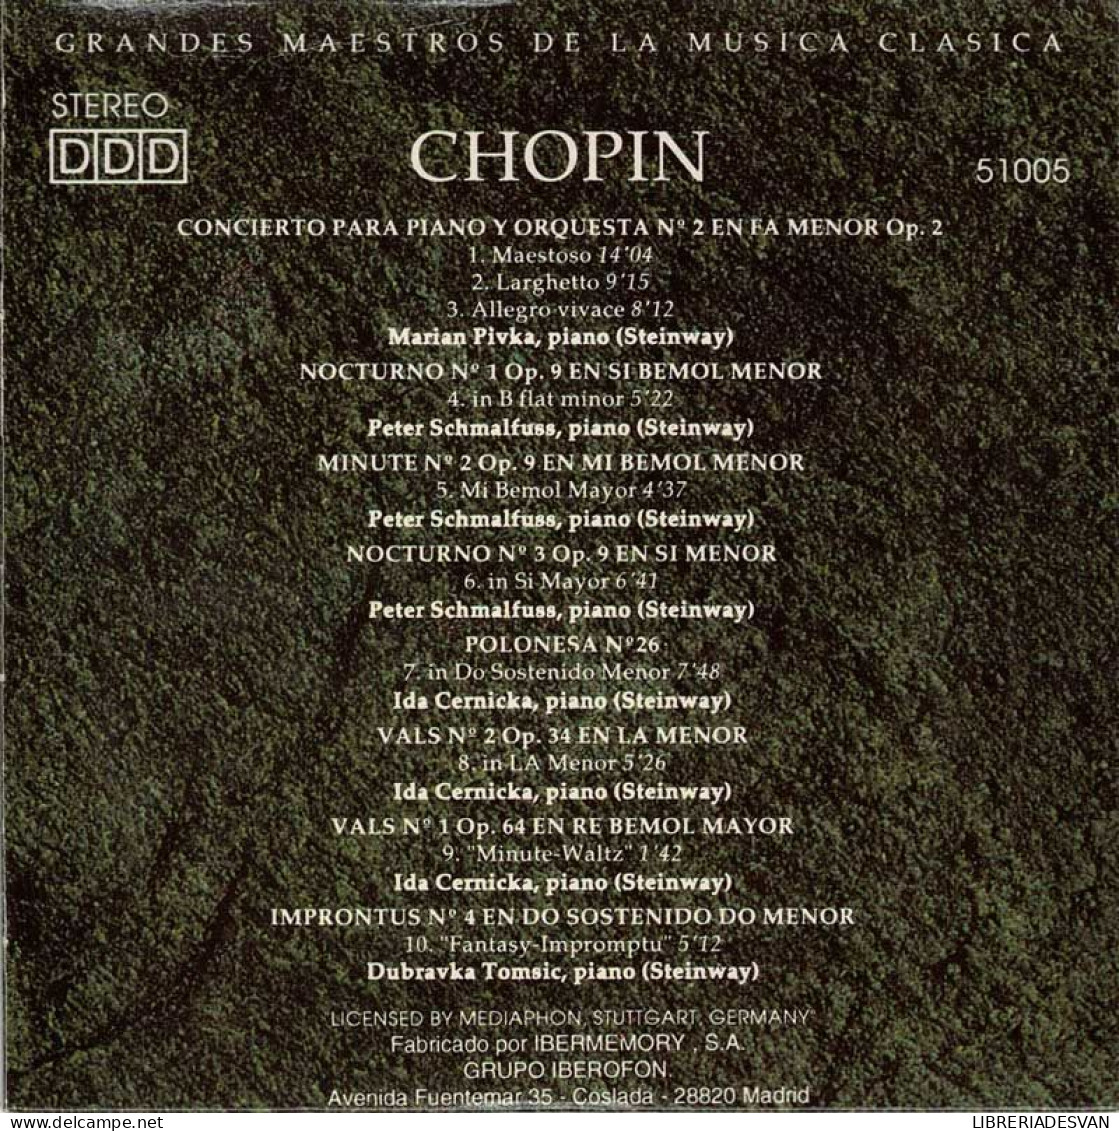 Chopin - Concierto Para Piano Y Orquesta No. 2. Nocturnos. Minute. Valses. Fantasías. Improntus. CD - Classica